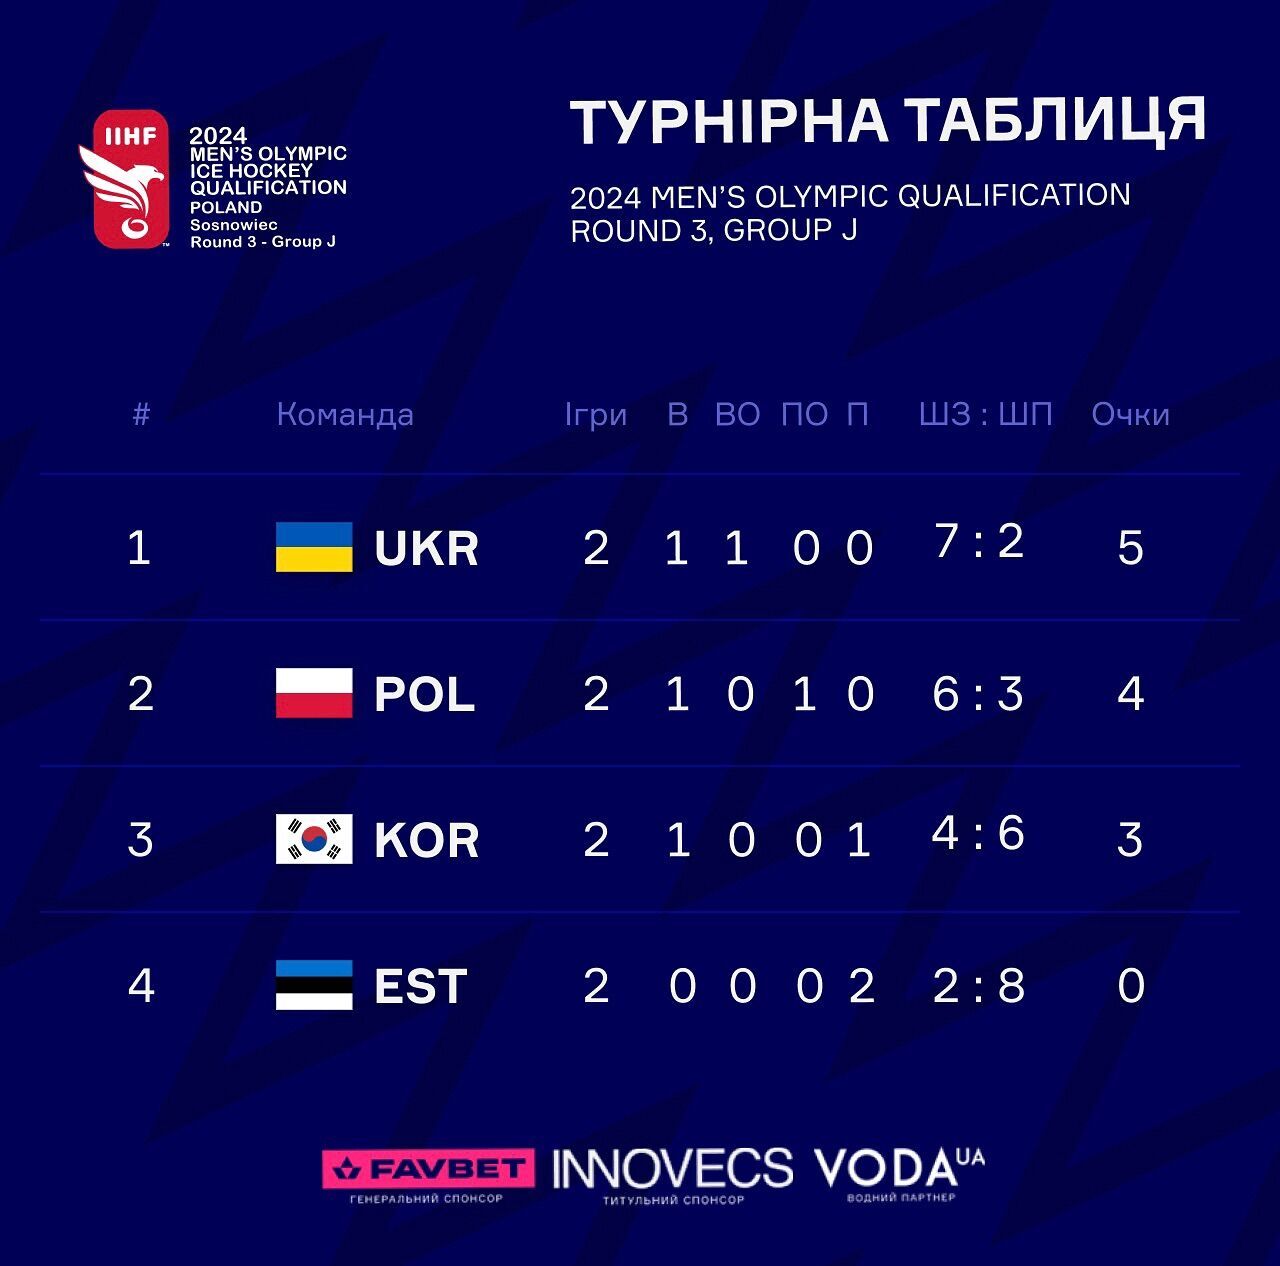 Грандиозная сенсация! Украина добыла драматичную победу в Польше в квалификации Олимпиады-2026 по хоккею. Видео